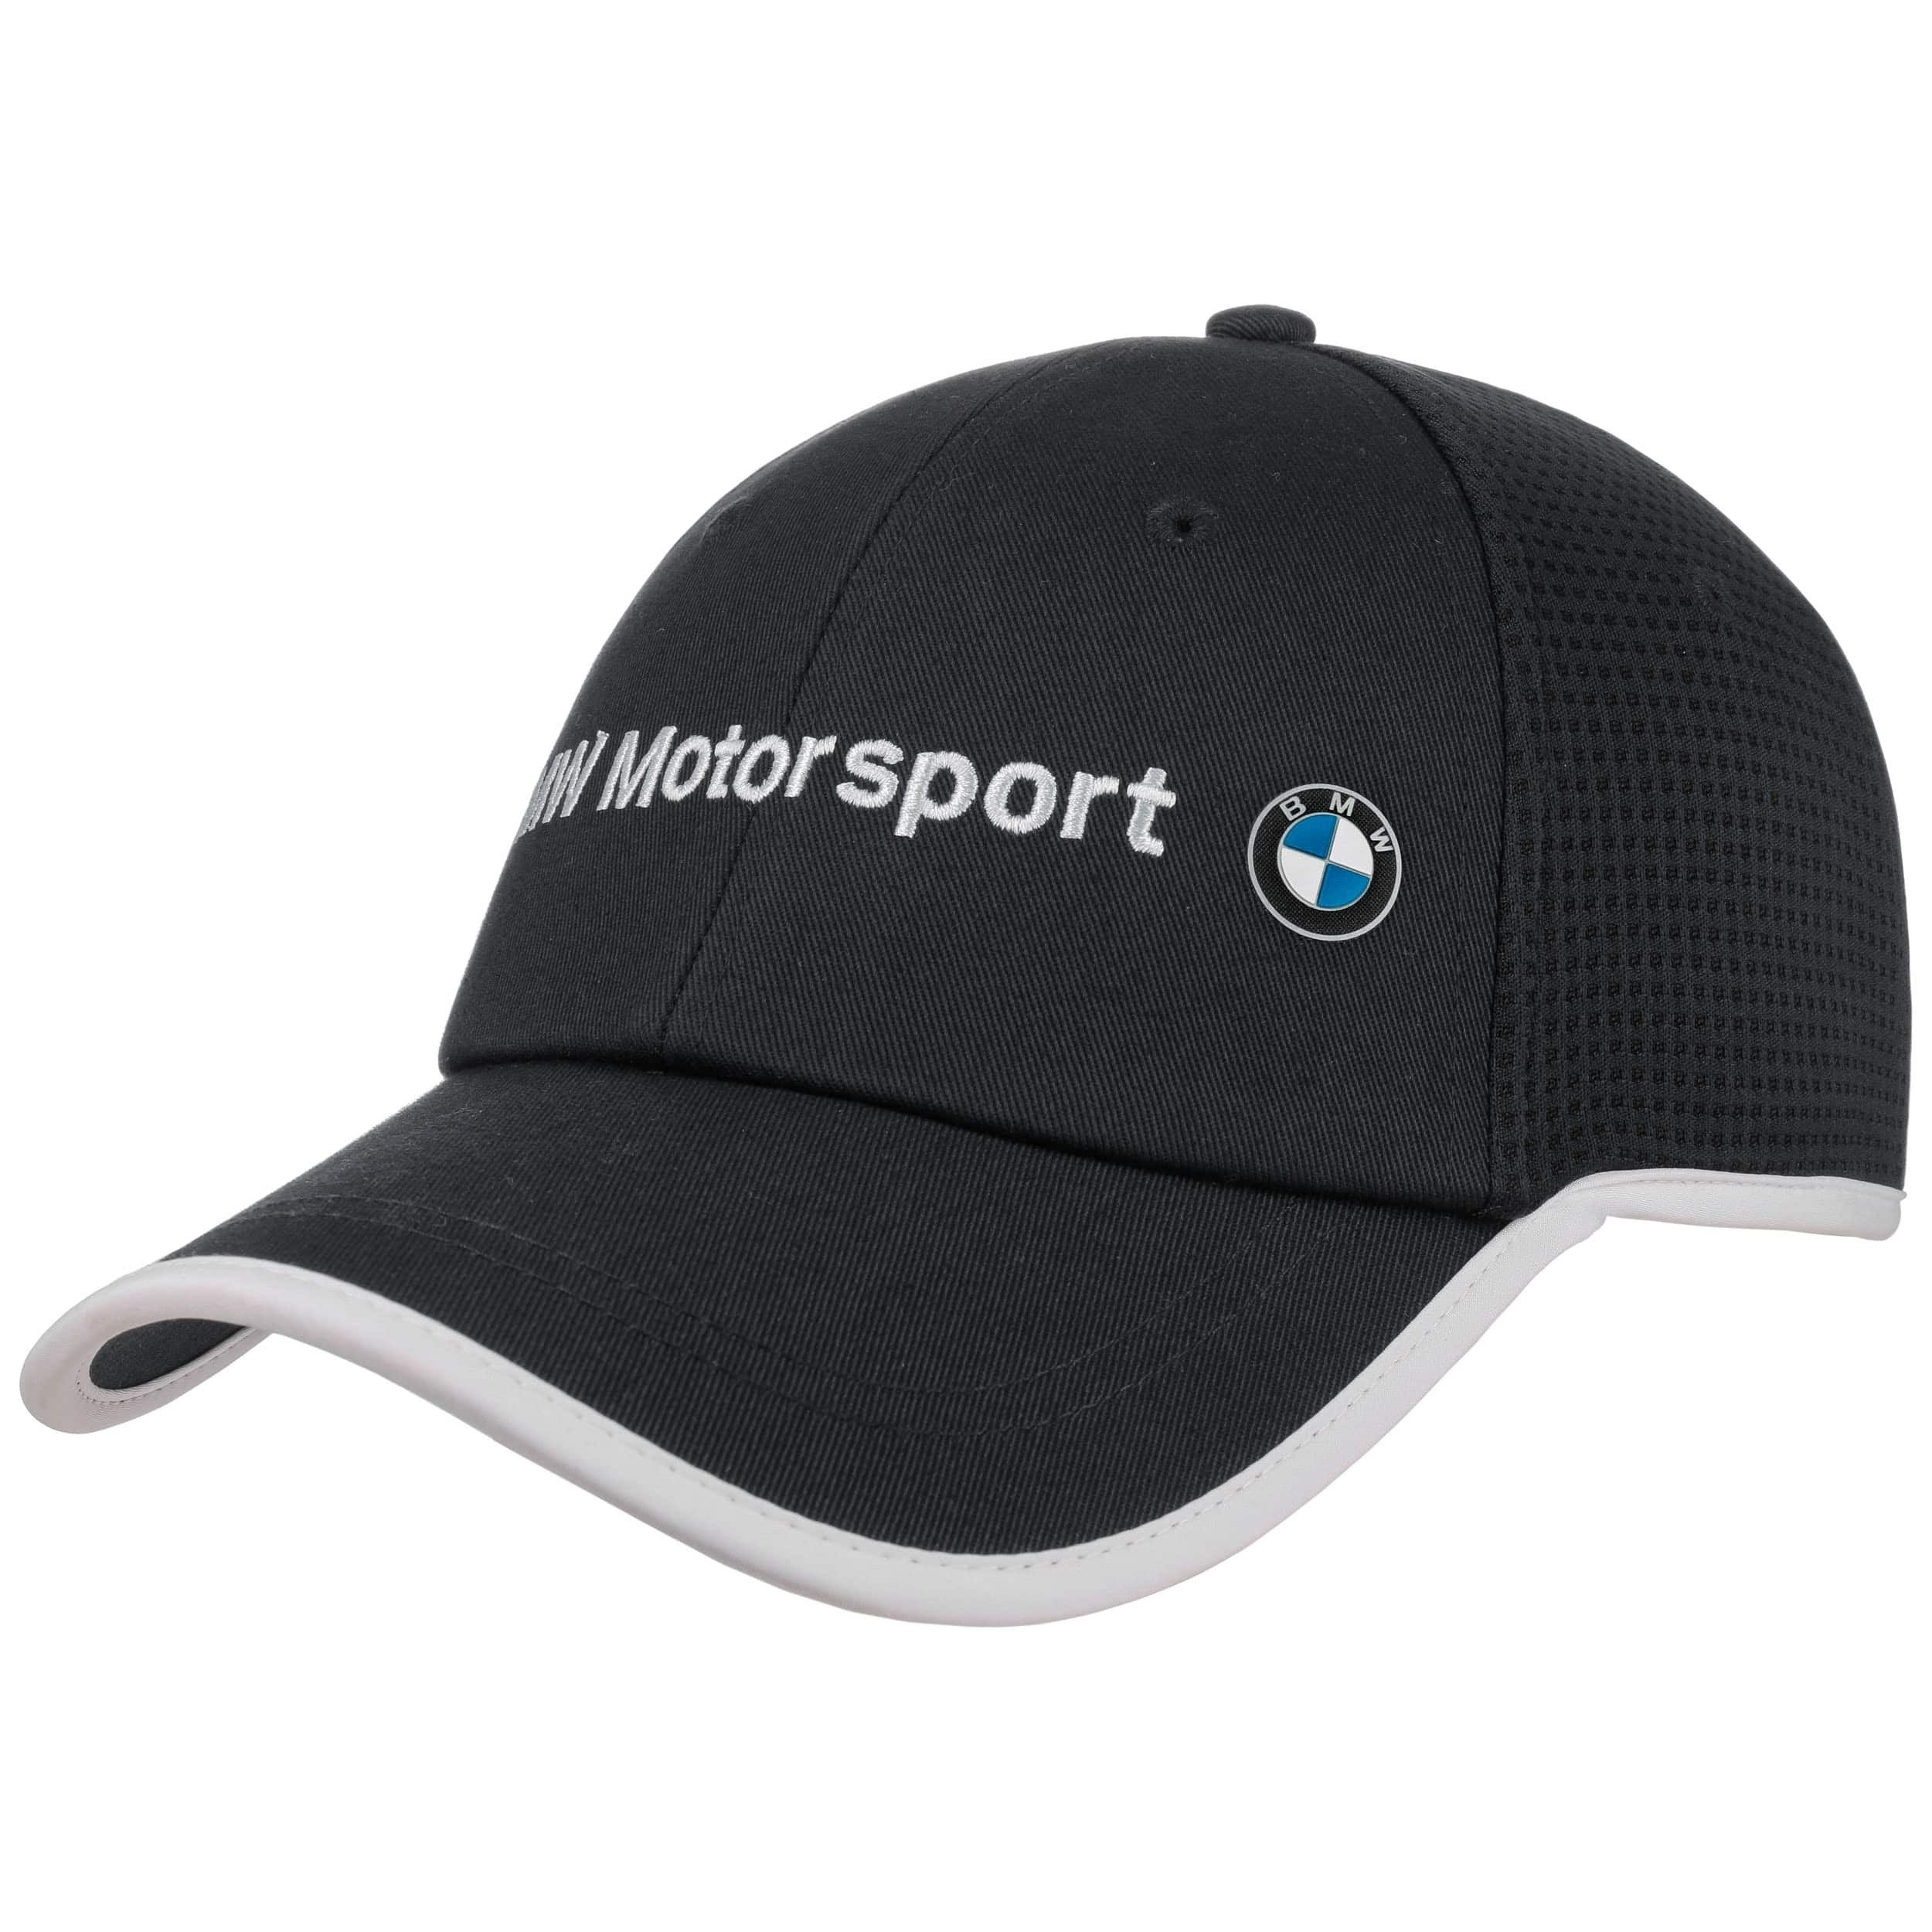 BMW Motorsport Cap by PUMA, EUR 29,95 --> Hats, caps & beanies shop